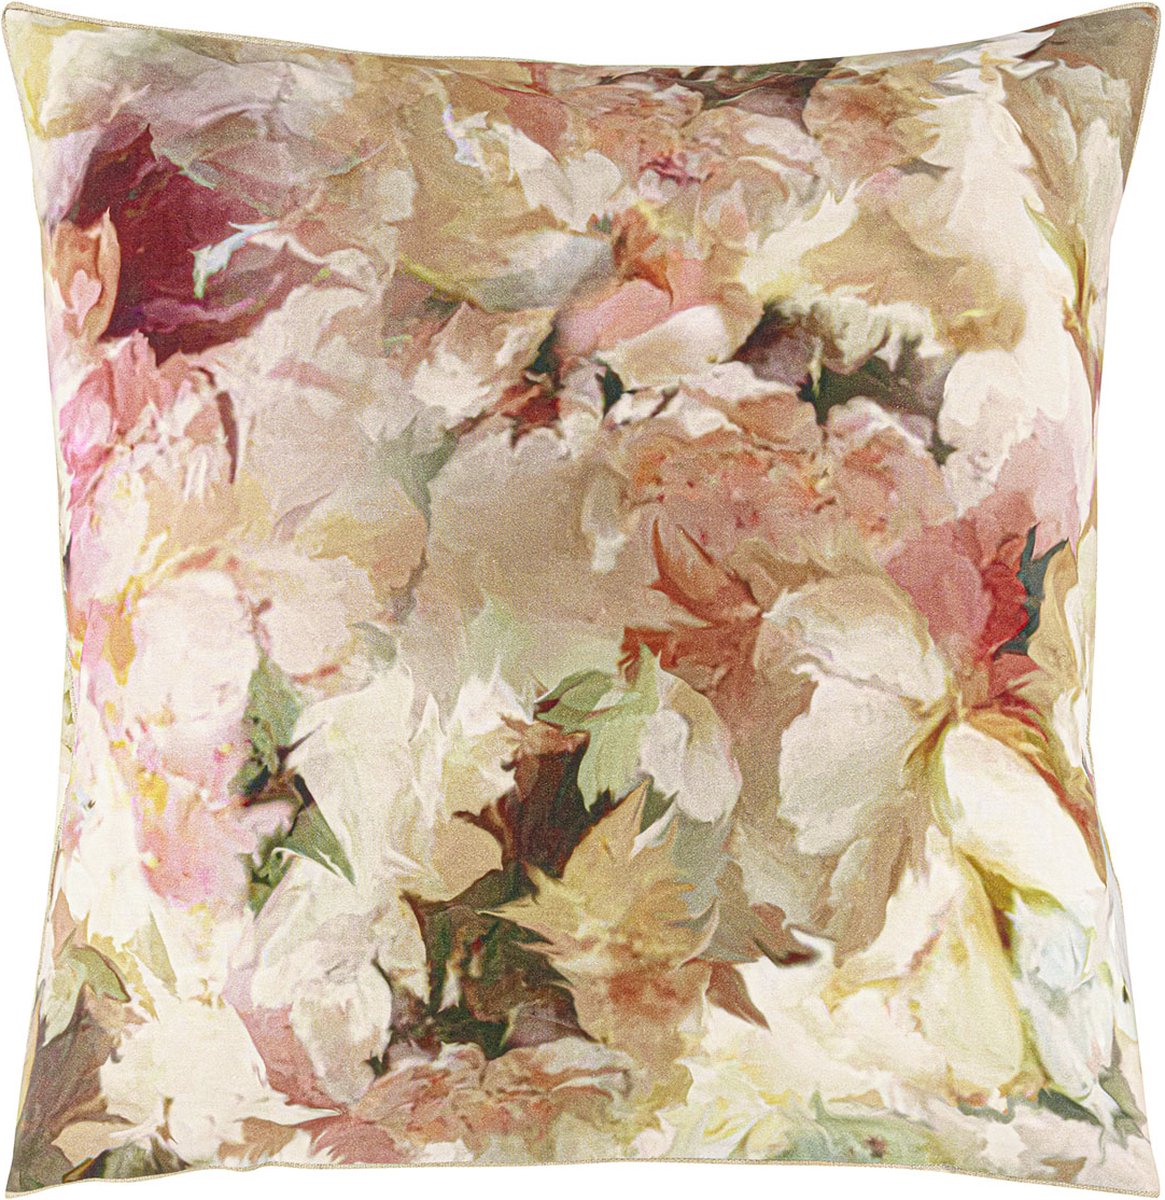 DESIGNERS GUILD - Fleurs de jour Kussensloop in katoen perkal met print 65 x 65 cm